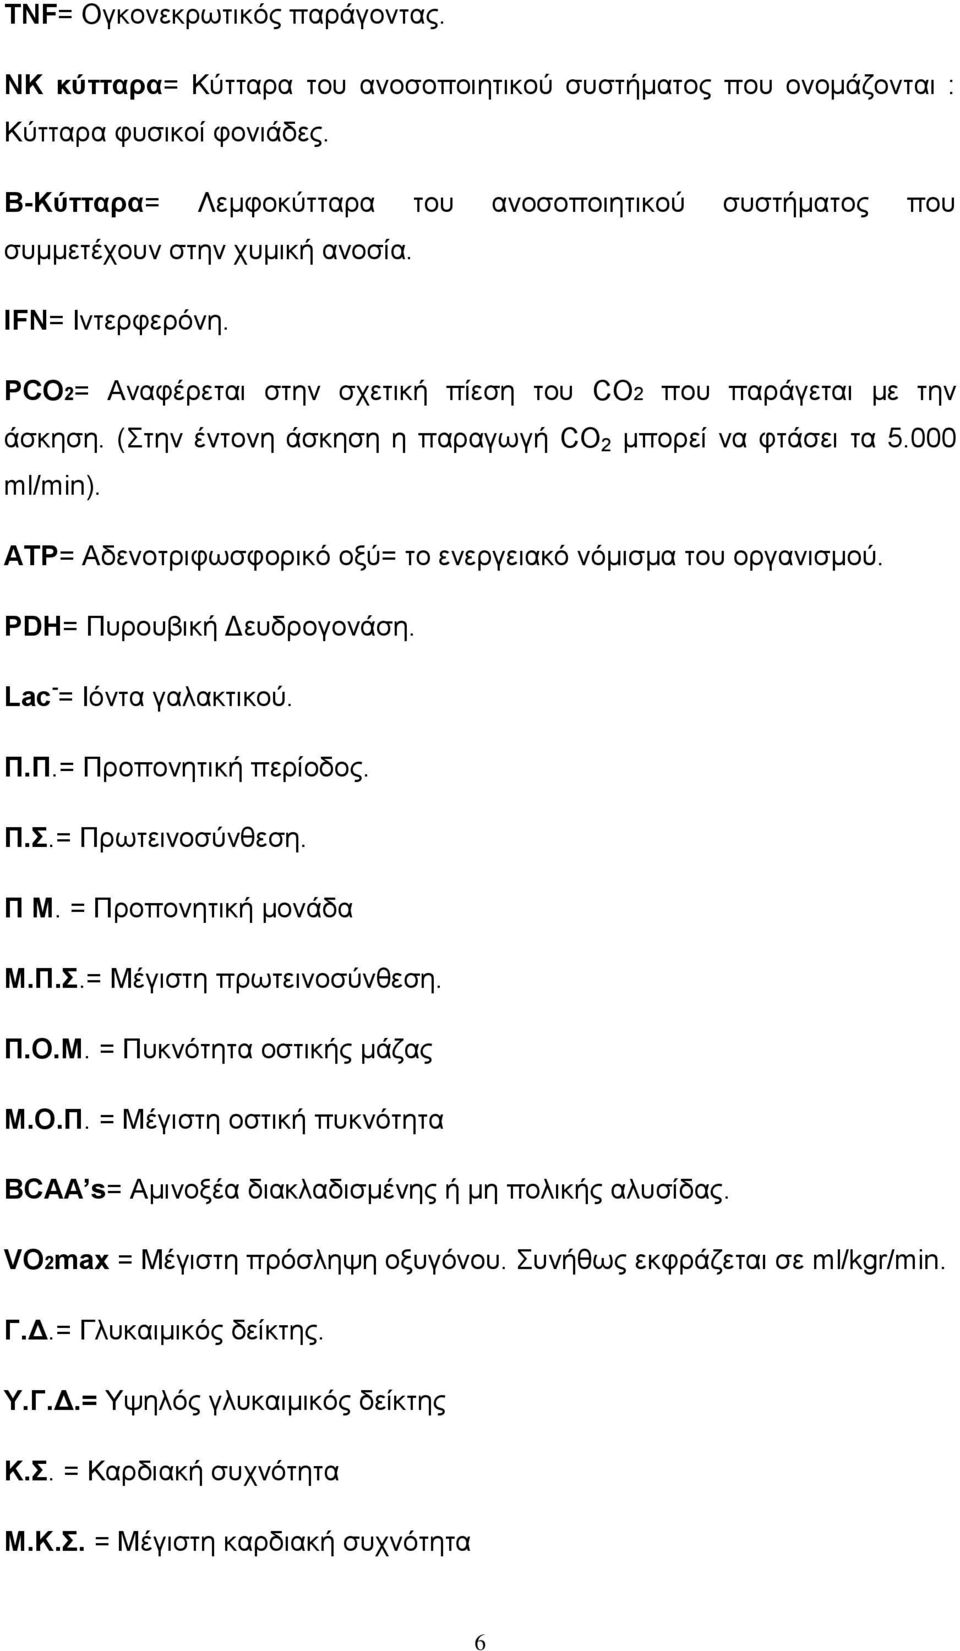 (Στην έντονη άσκηση η παραγωγή CO 2 μπορεί να φτάσει τα 5.000 ml/min). ATΡ= Αδενοτριφωσφορικό οξύ= το ενεργειακό νόμισμα του οργανισμού. PDH= Πυρουβική Δευδρογονάση. Lac - = Ιόντα γαλακτικού. Π.Π.= Προπονητική περίοδος.